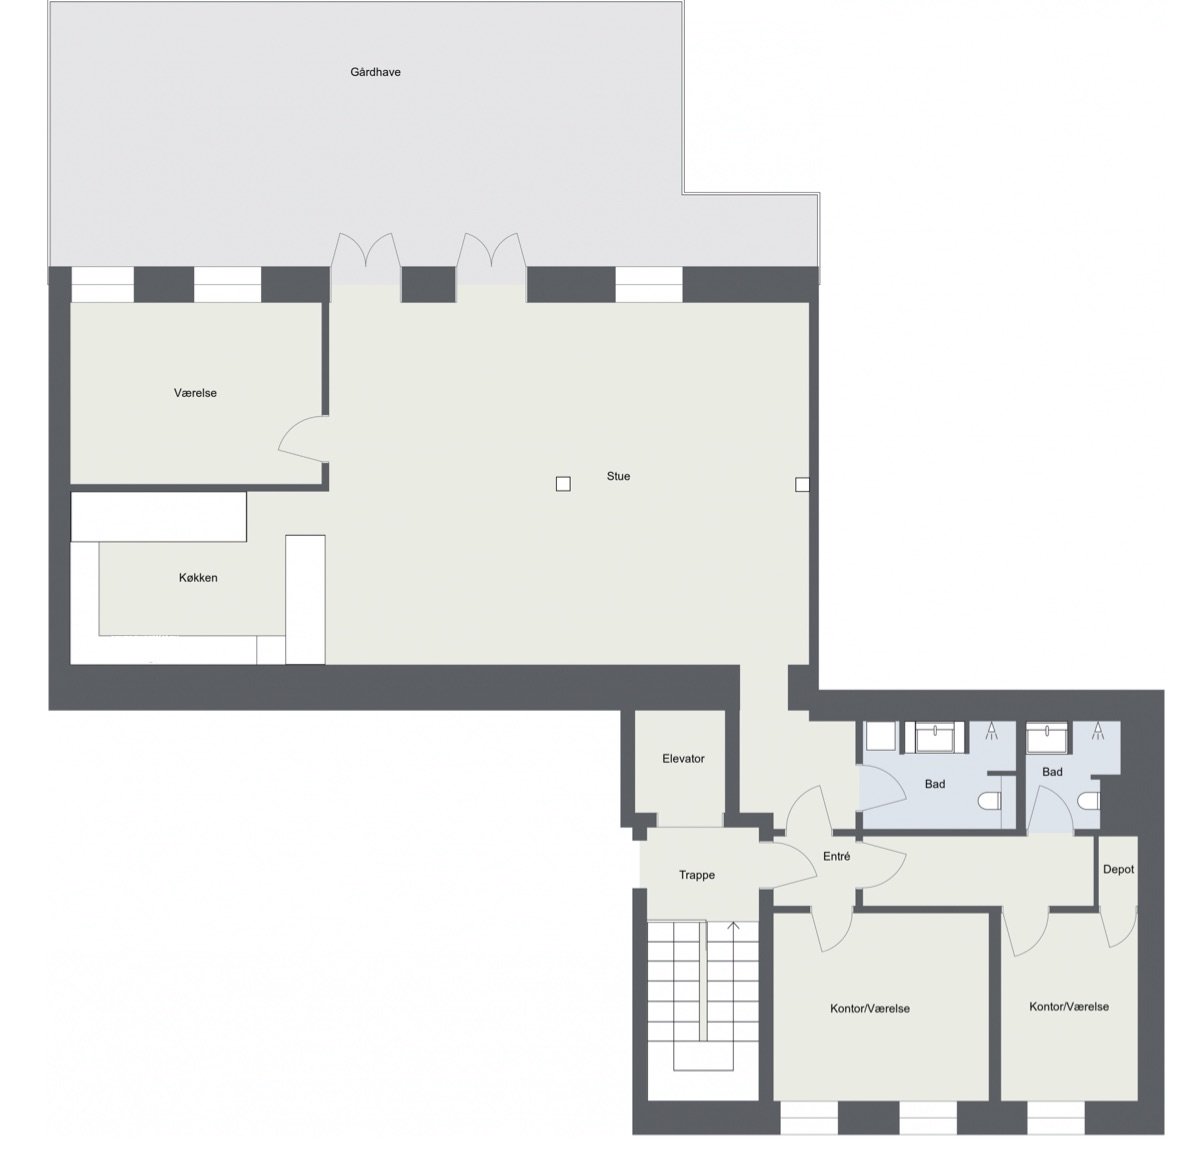 Floorplan letterhead - STKG - Etage 1 - 2D Floor Plan.jpg